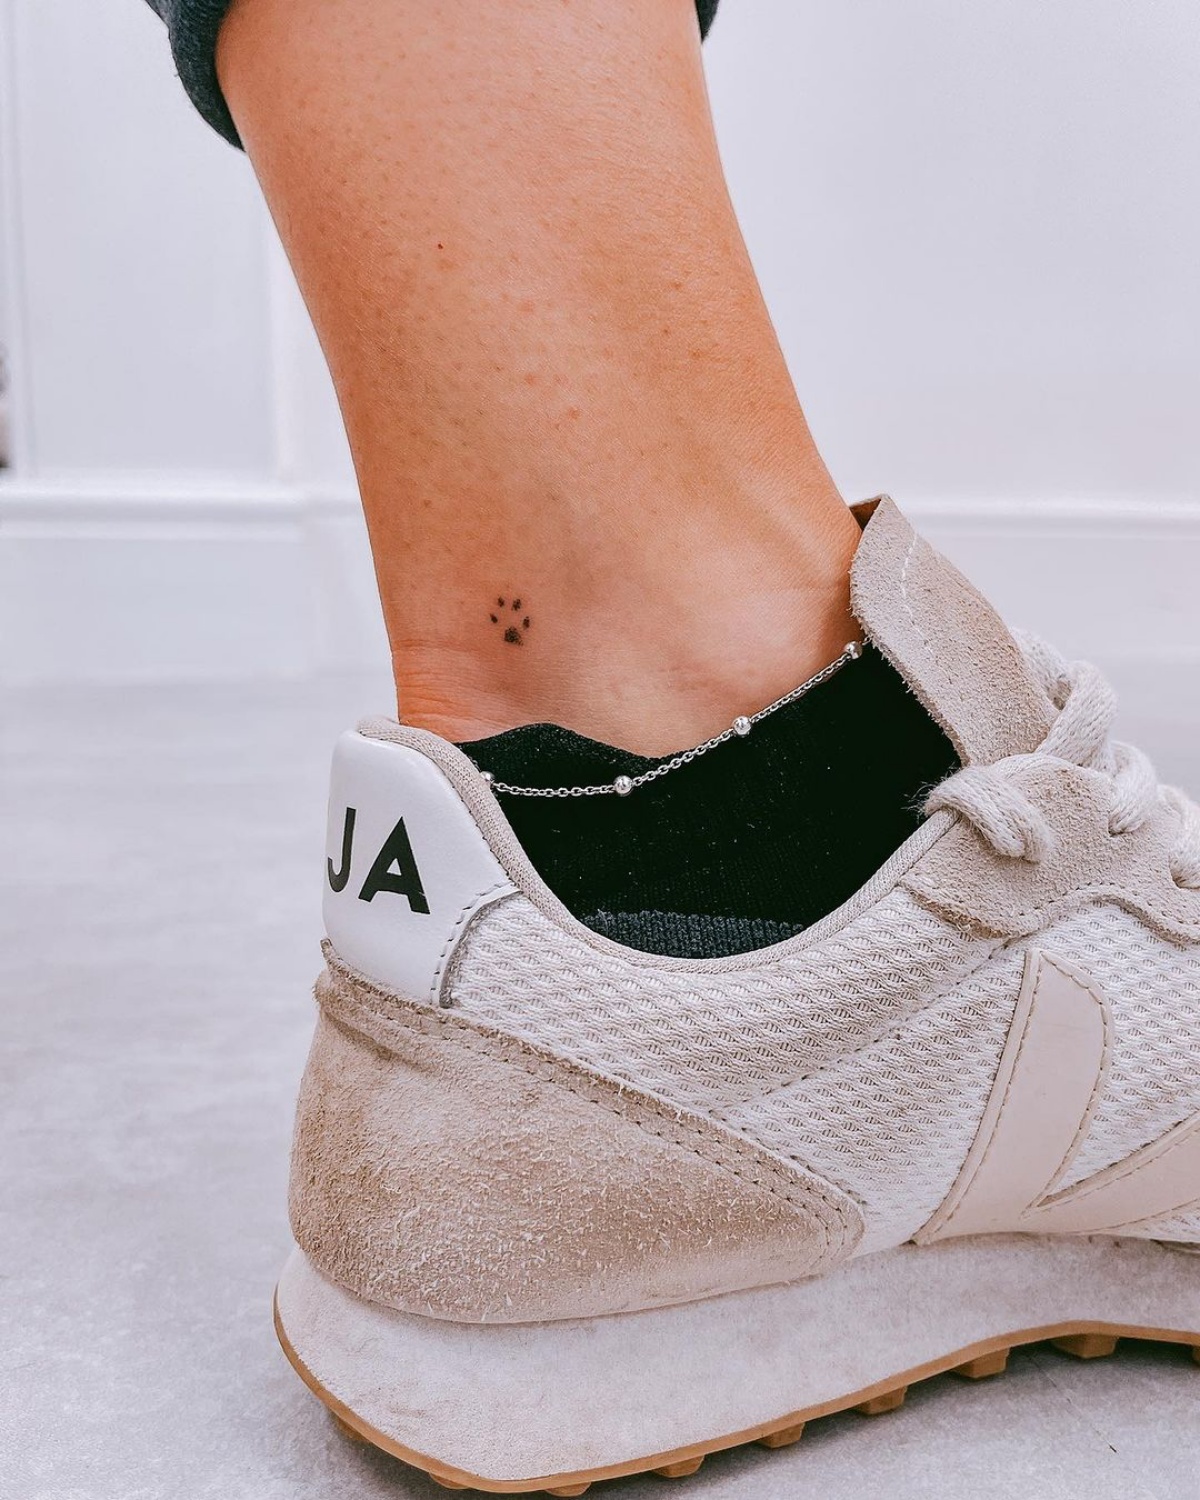 tatuaggio sulla caviglia donna impronta zampa